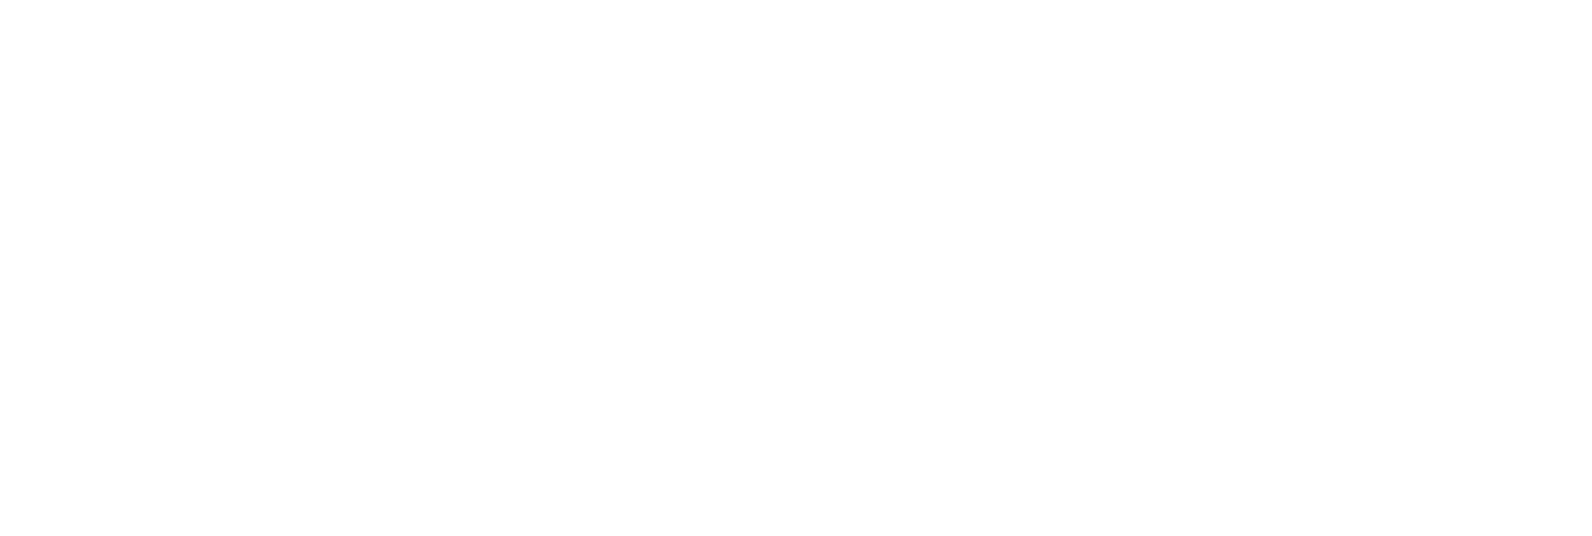 Netwealth logo large for dark backgrounds (transparent PNG)